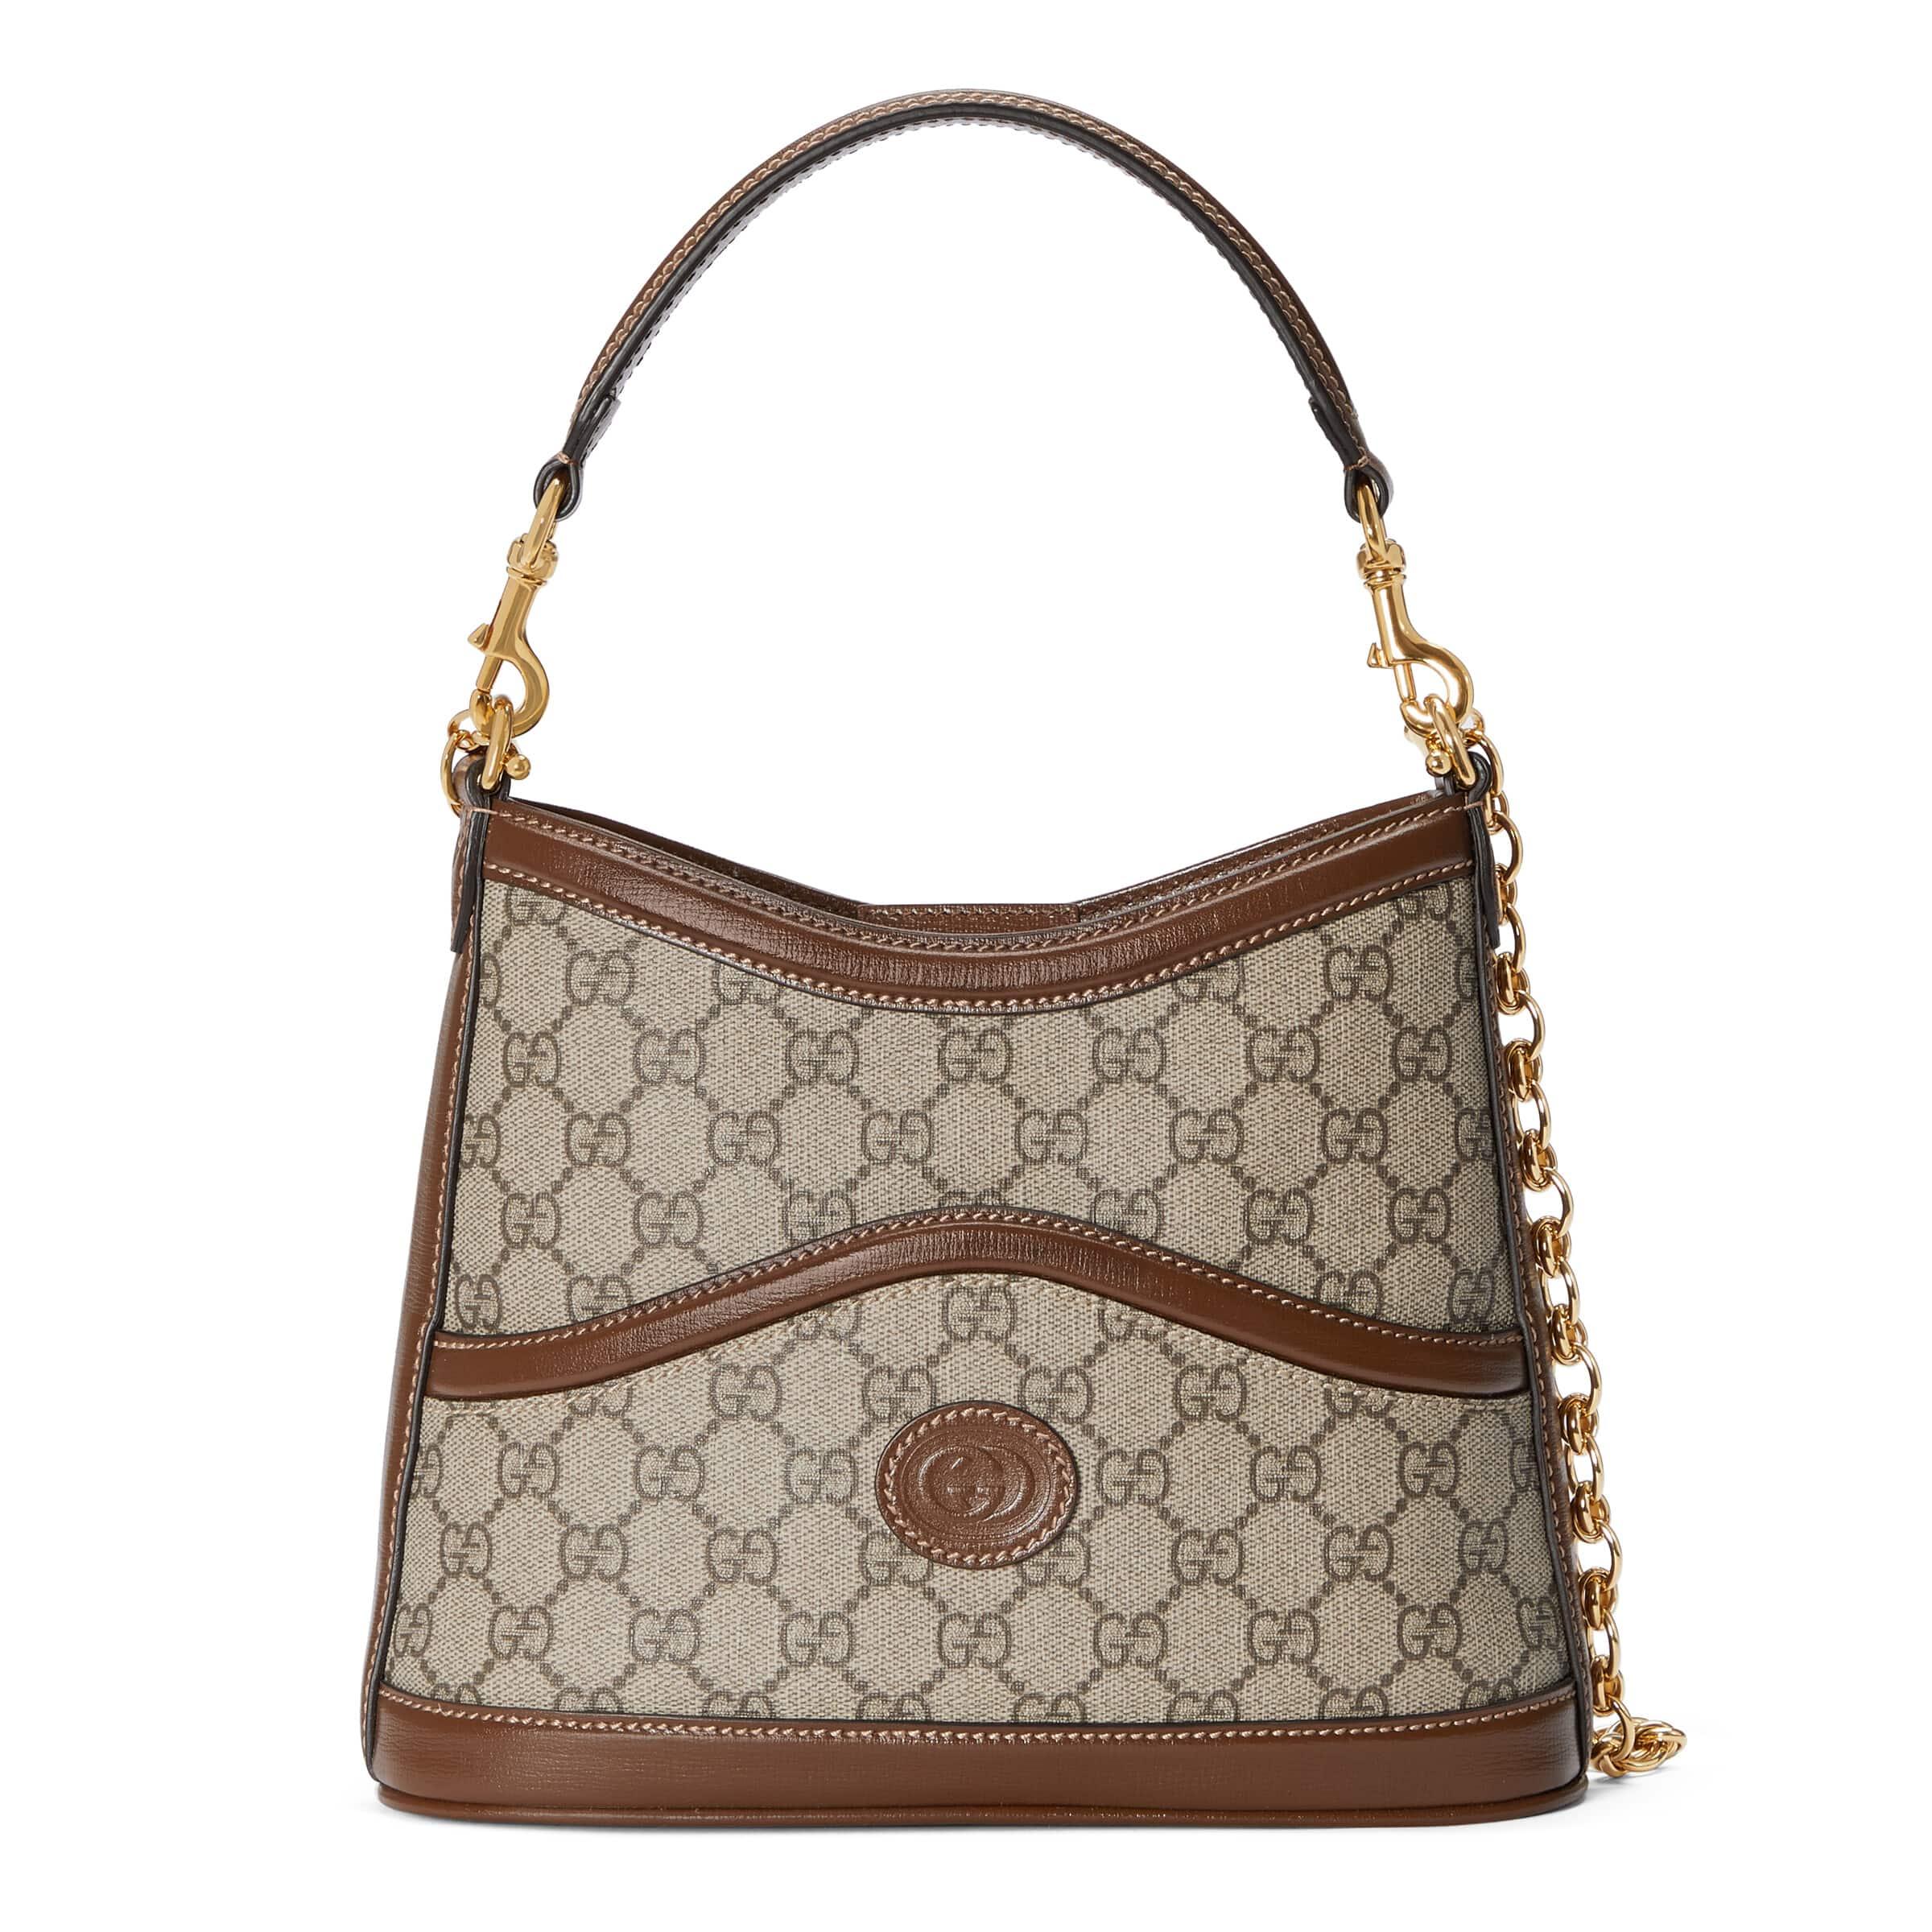 Gucci Large Shoulder Bag